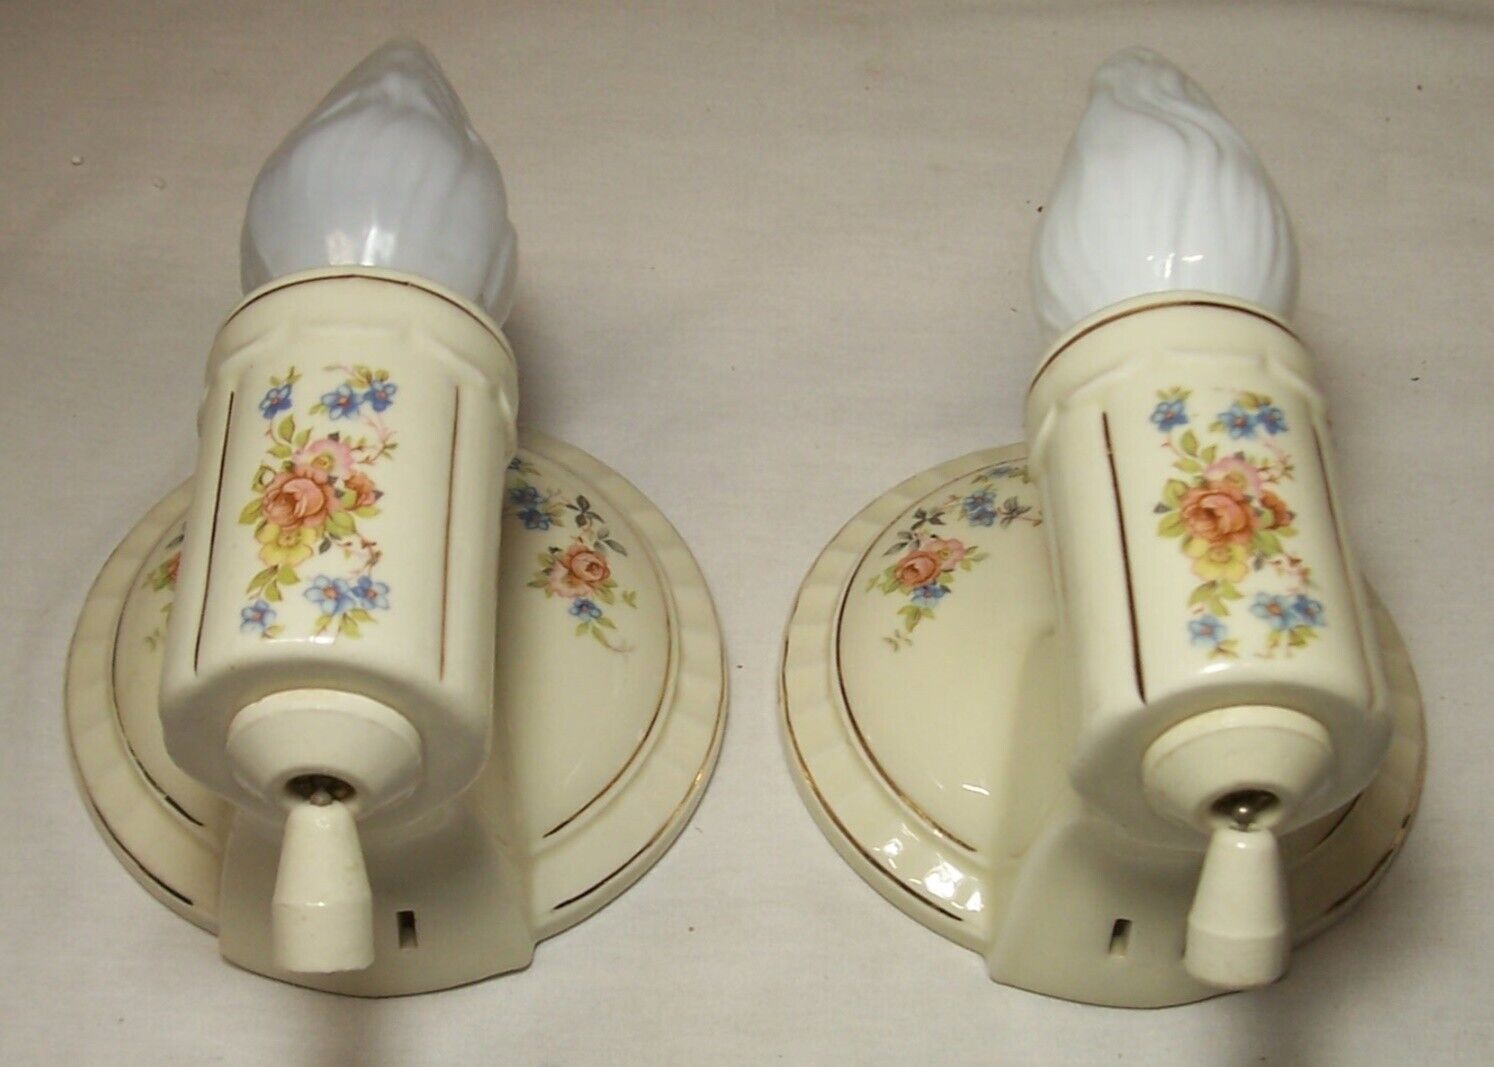 Antique Porcelain Sconce Light Pair Vtg Ceramic Fixture Bath Art Rewired USA #C2